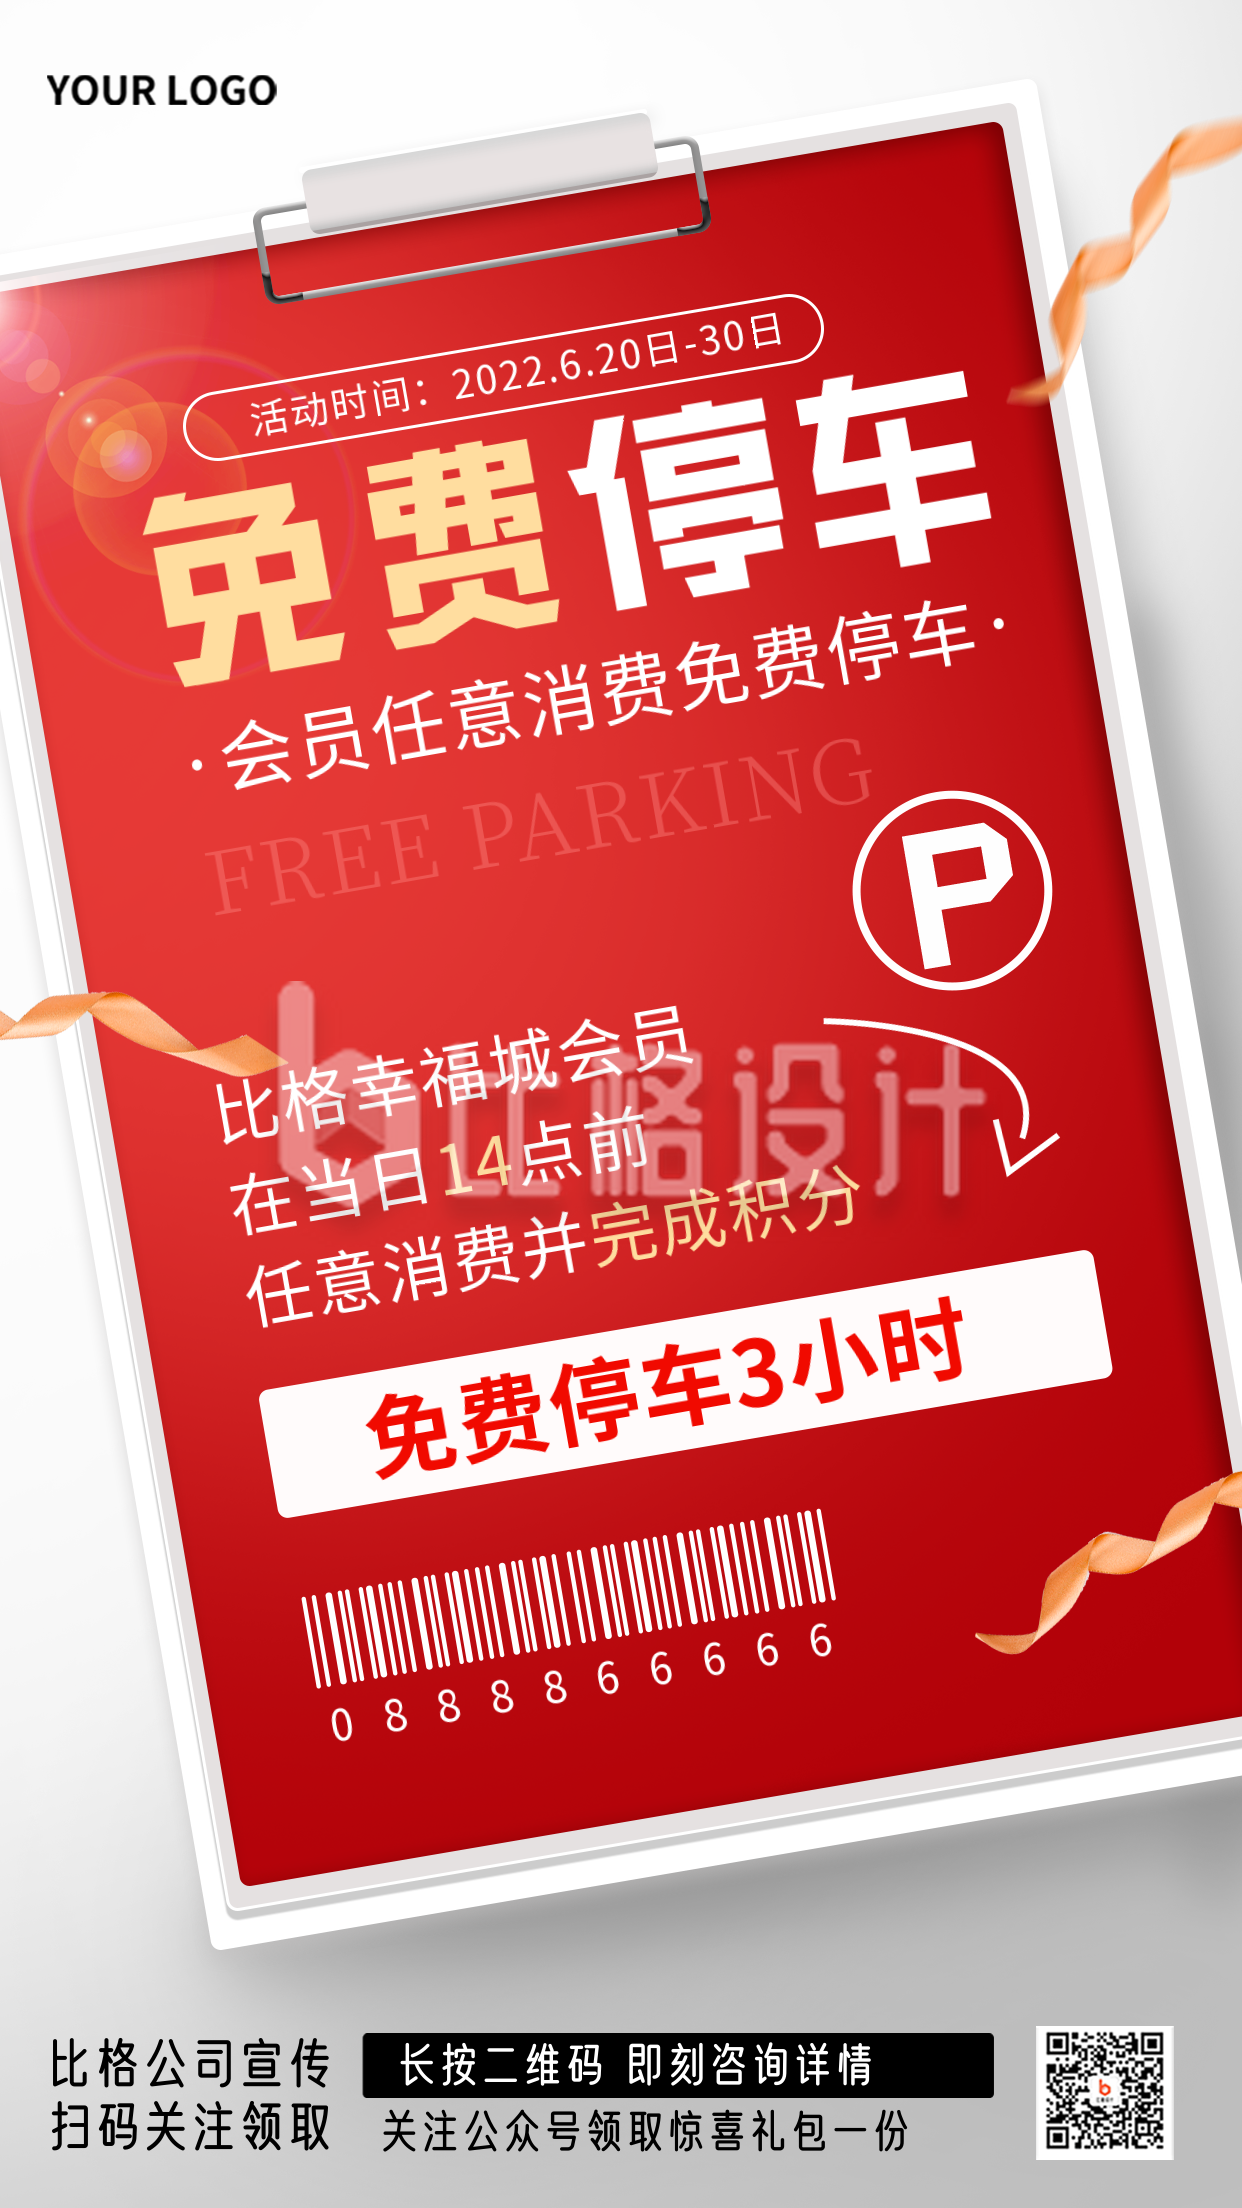 免费停车宣传红色手绘手机海报